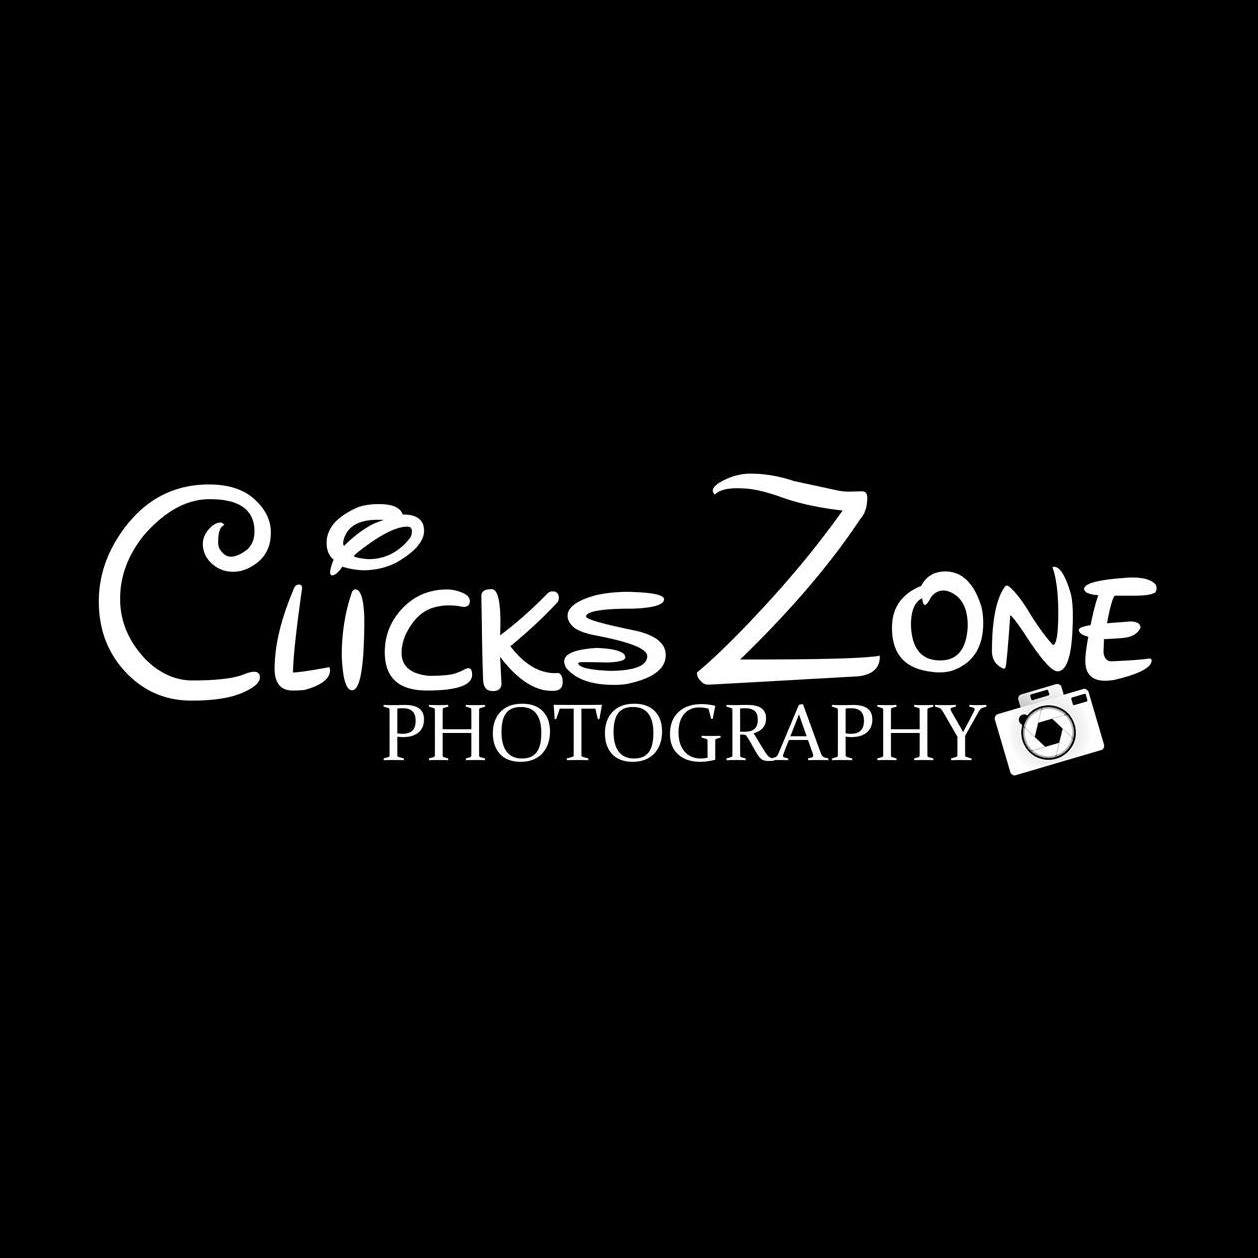 Clicks Zone Photography - Logo